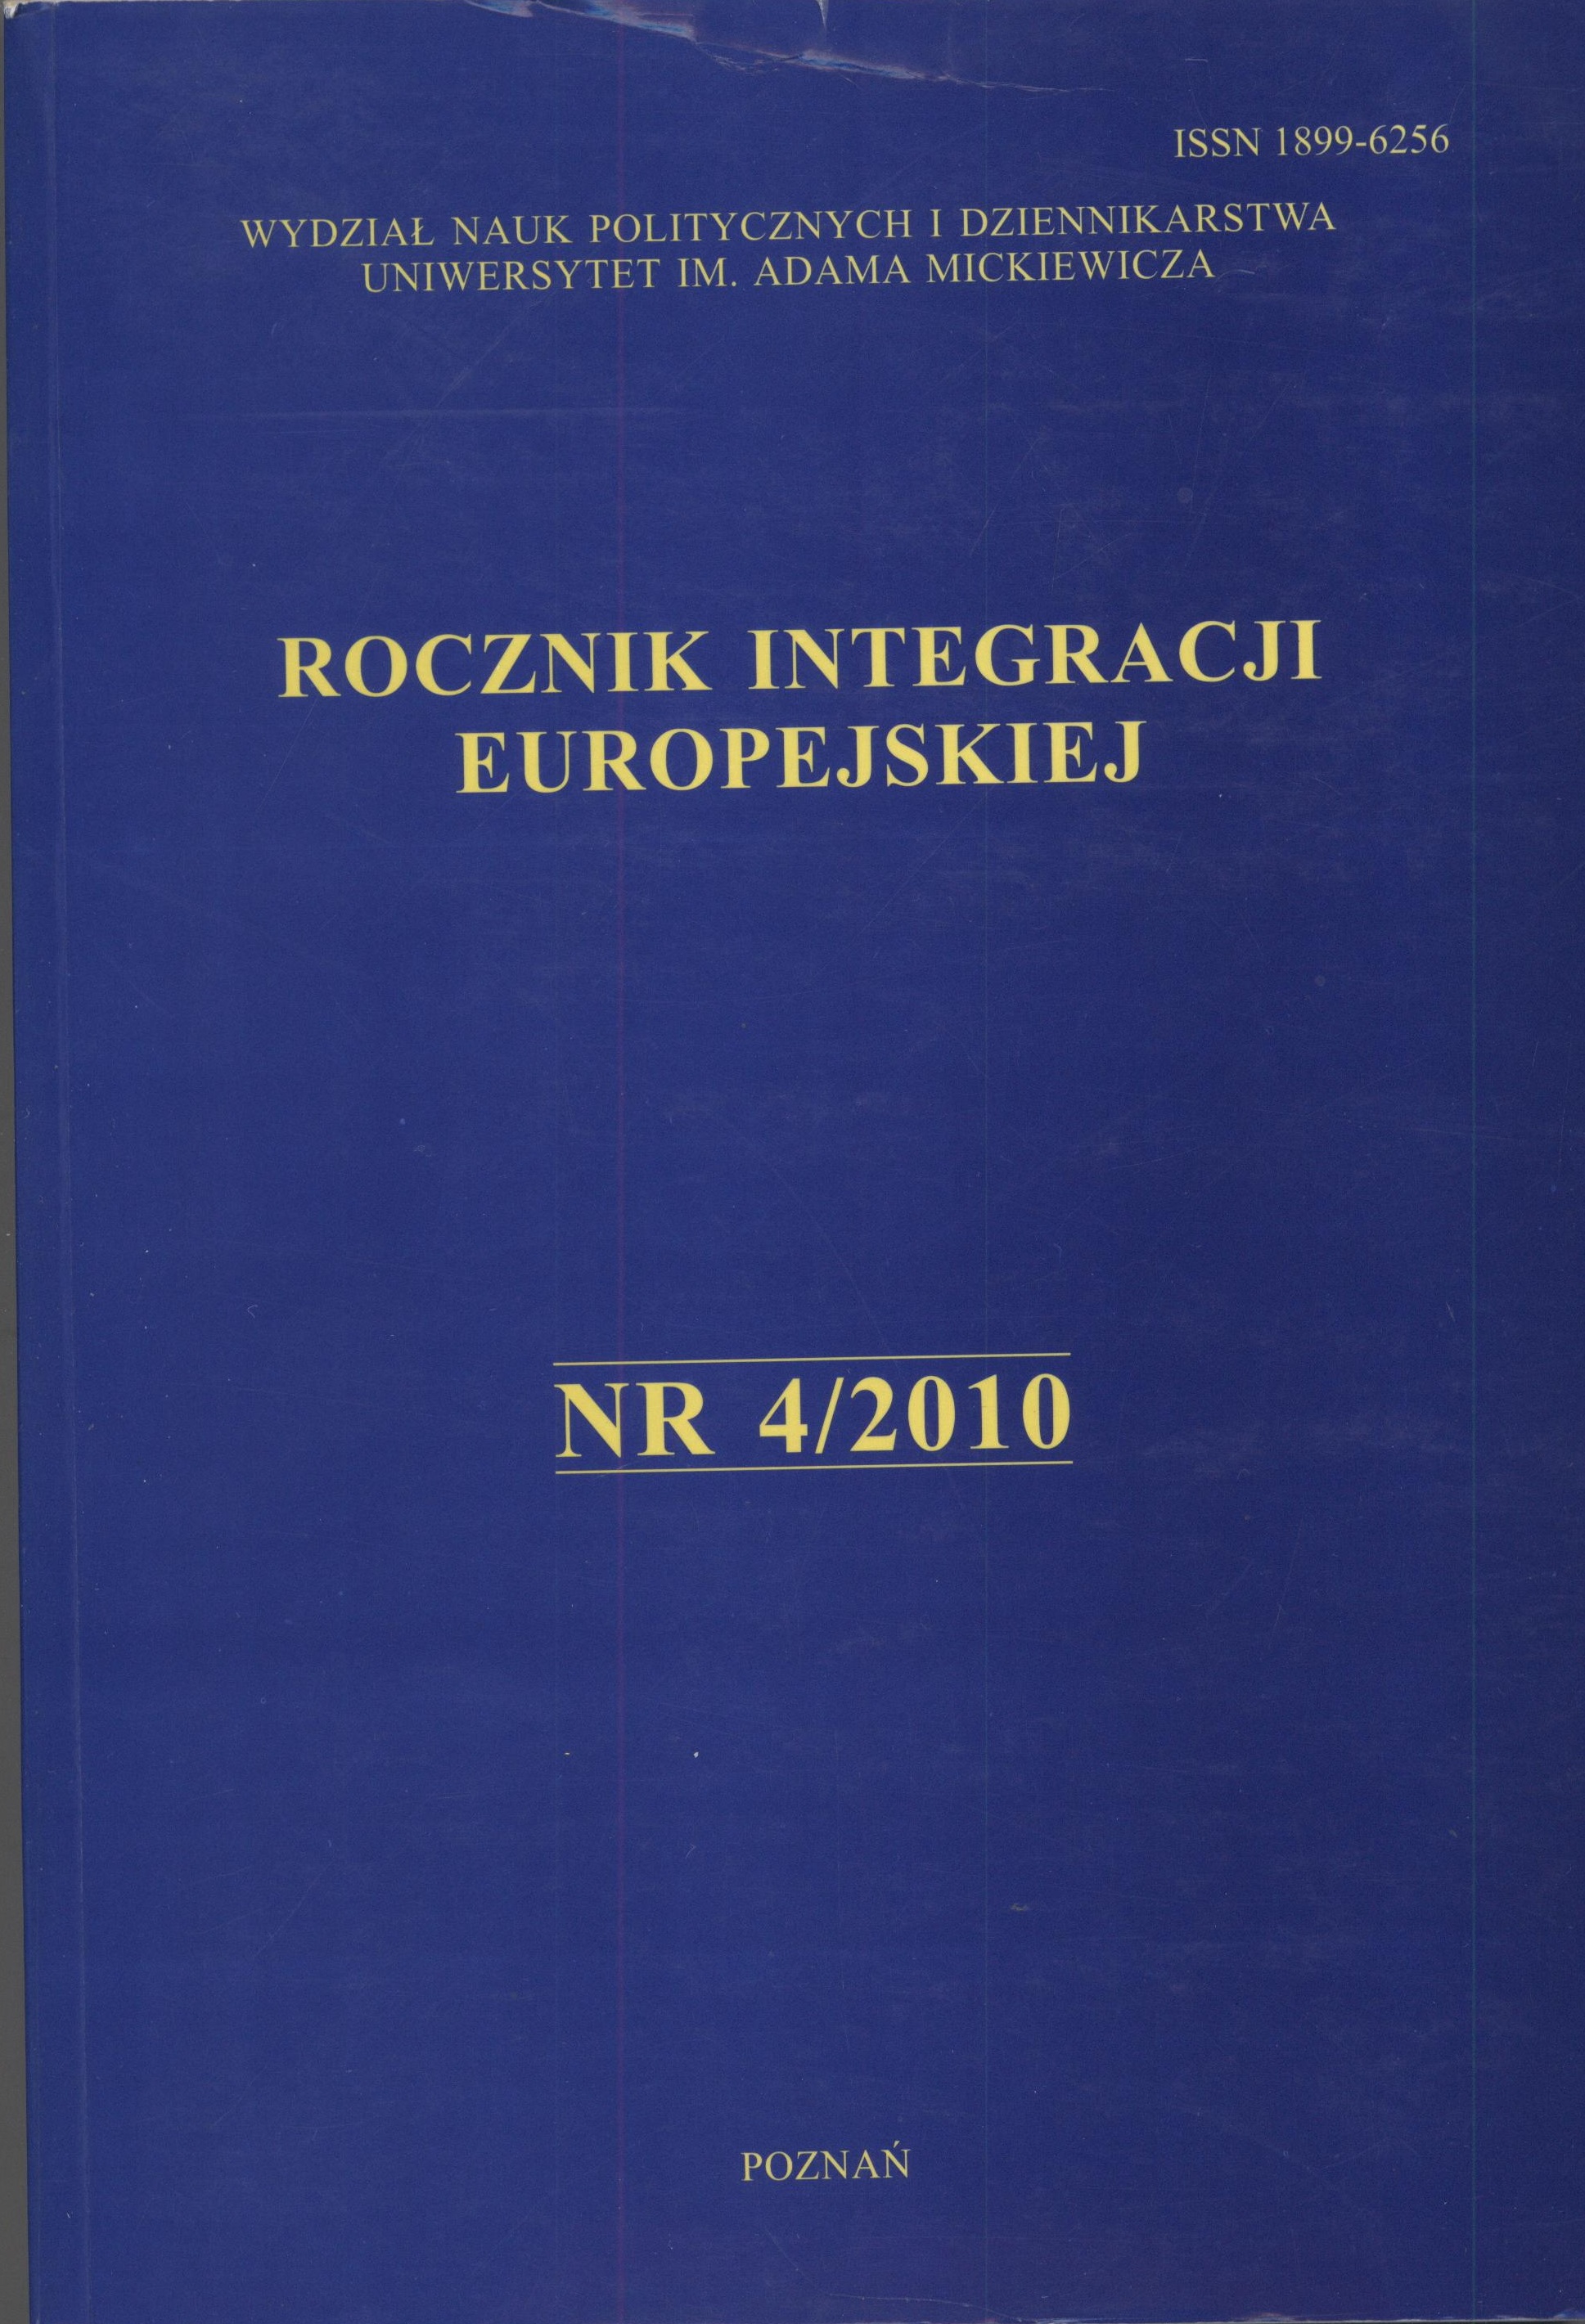 Civil Missions of the European Union, ed. Beata Przybylska-Maszner, Wydawnictwo Naukowe WNPiD UAM, Poznań 2010, ss. 312. Cover Image